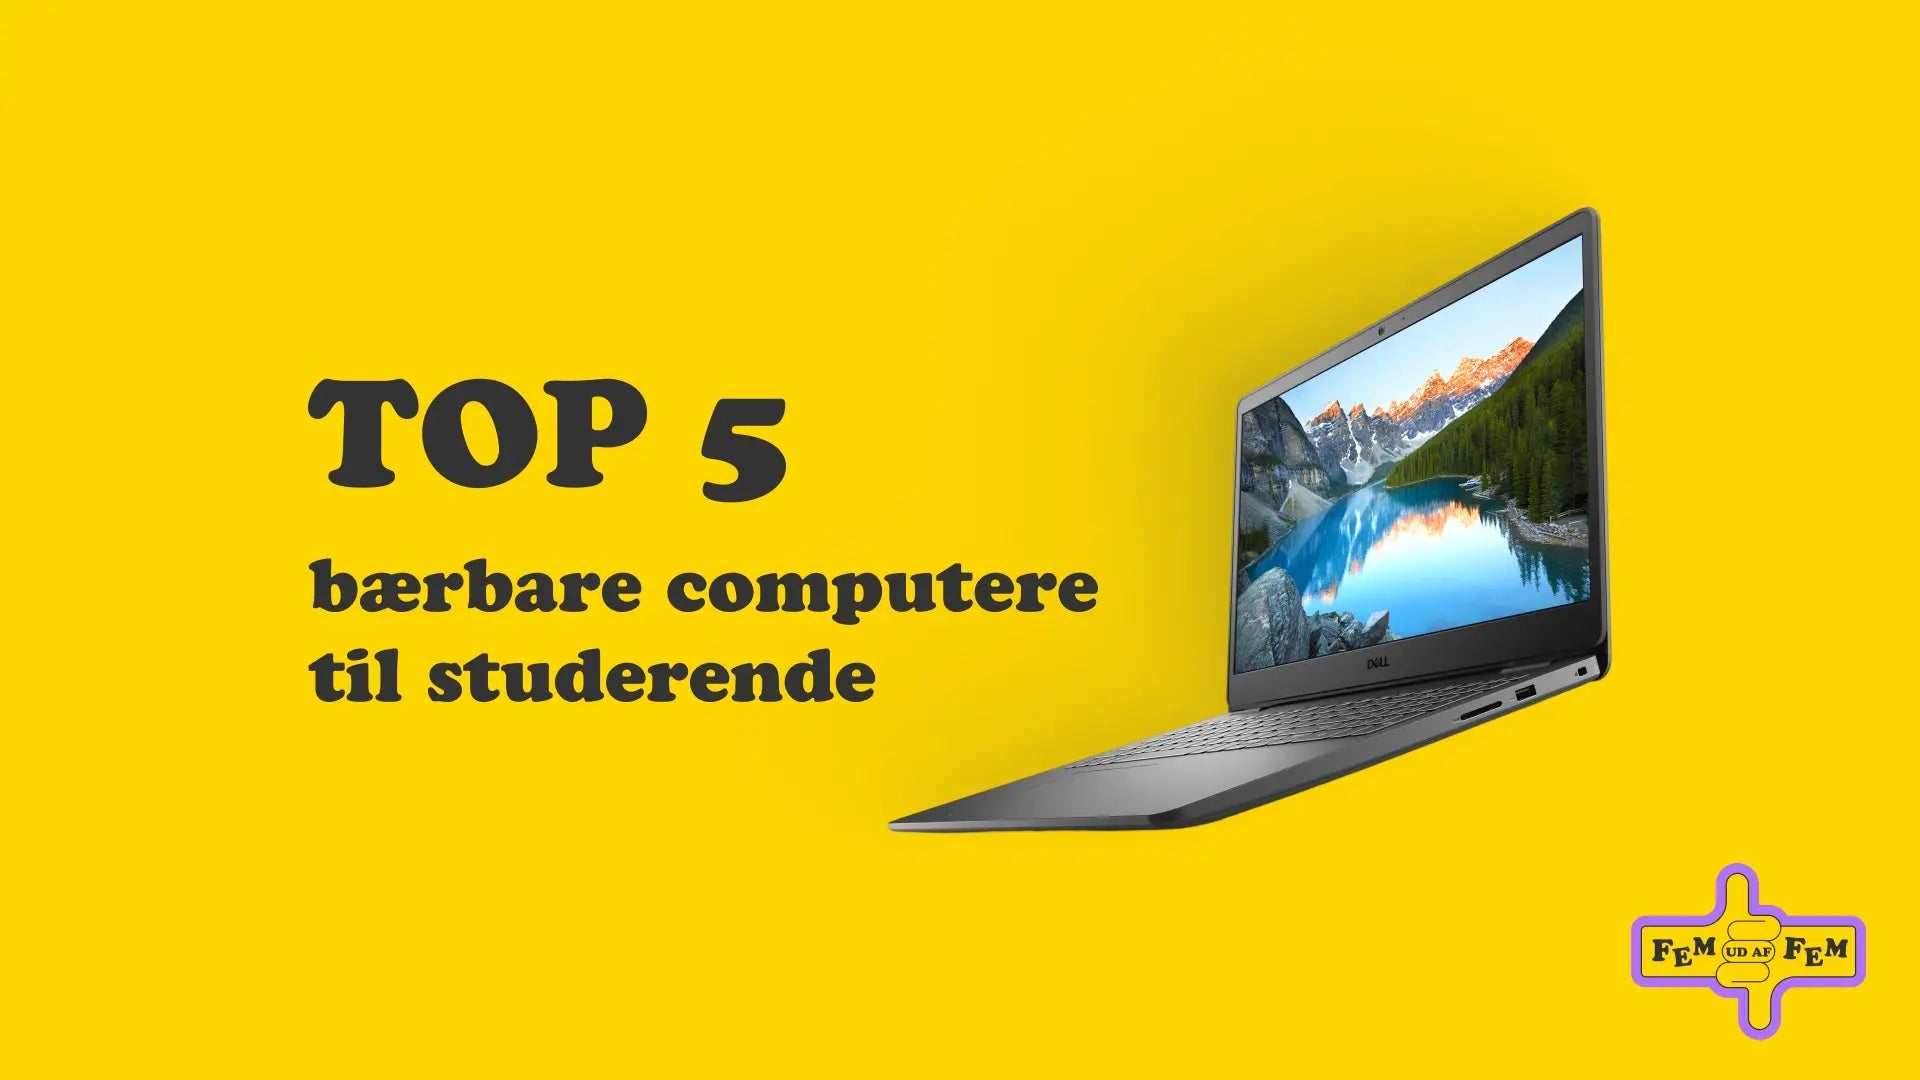 Top 5 bærbare computere til studerende